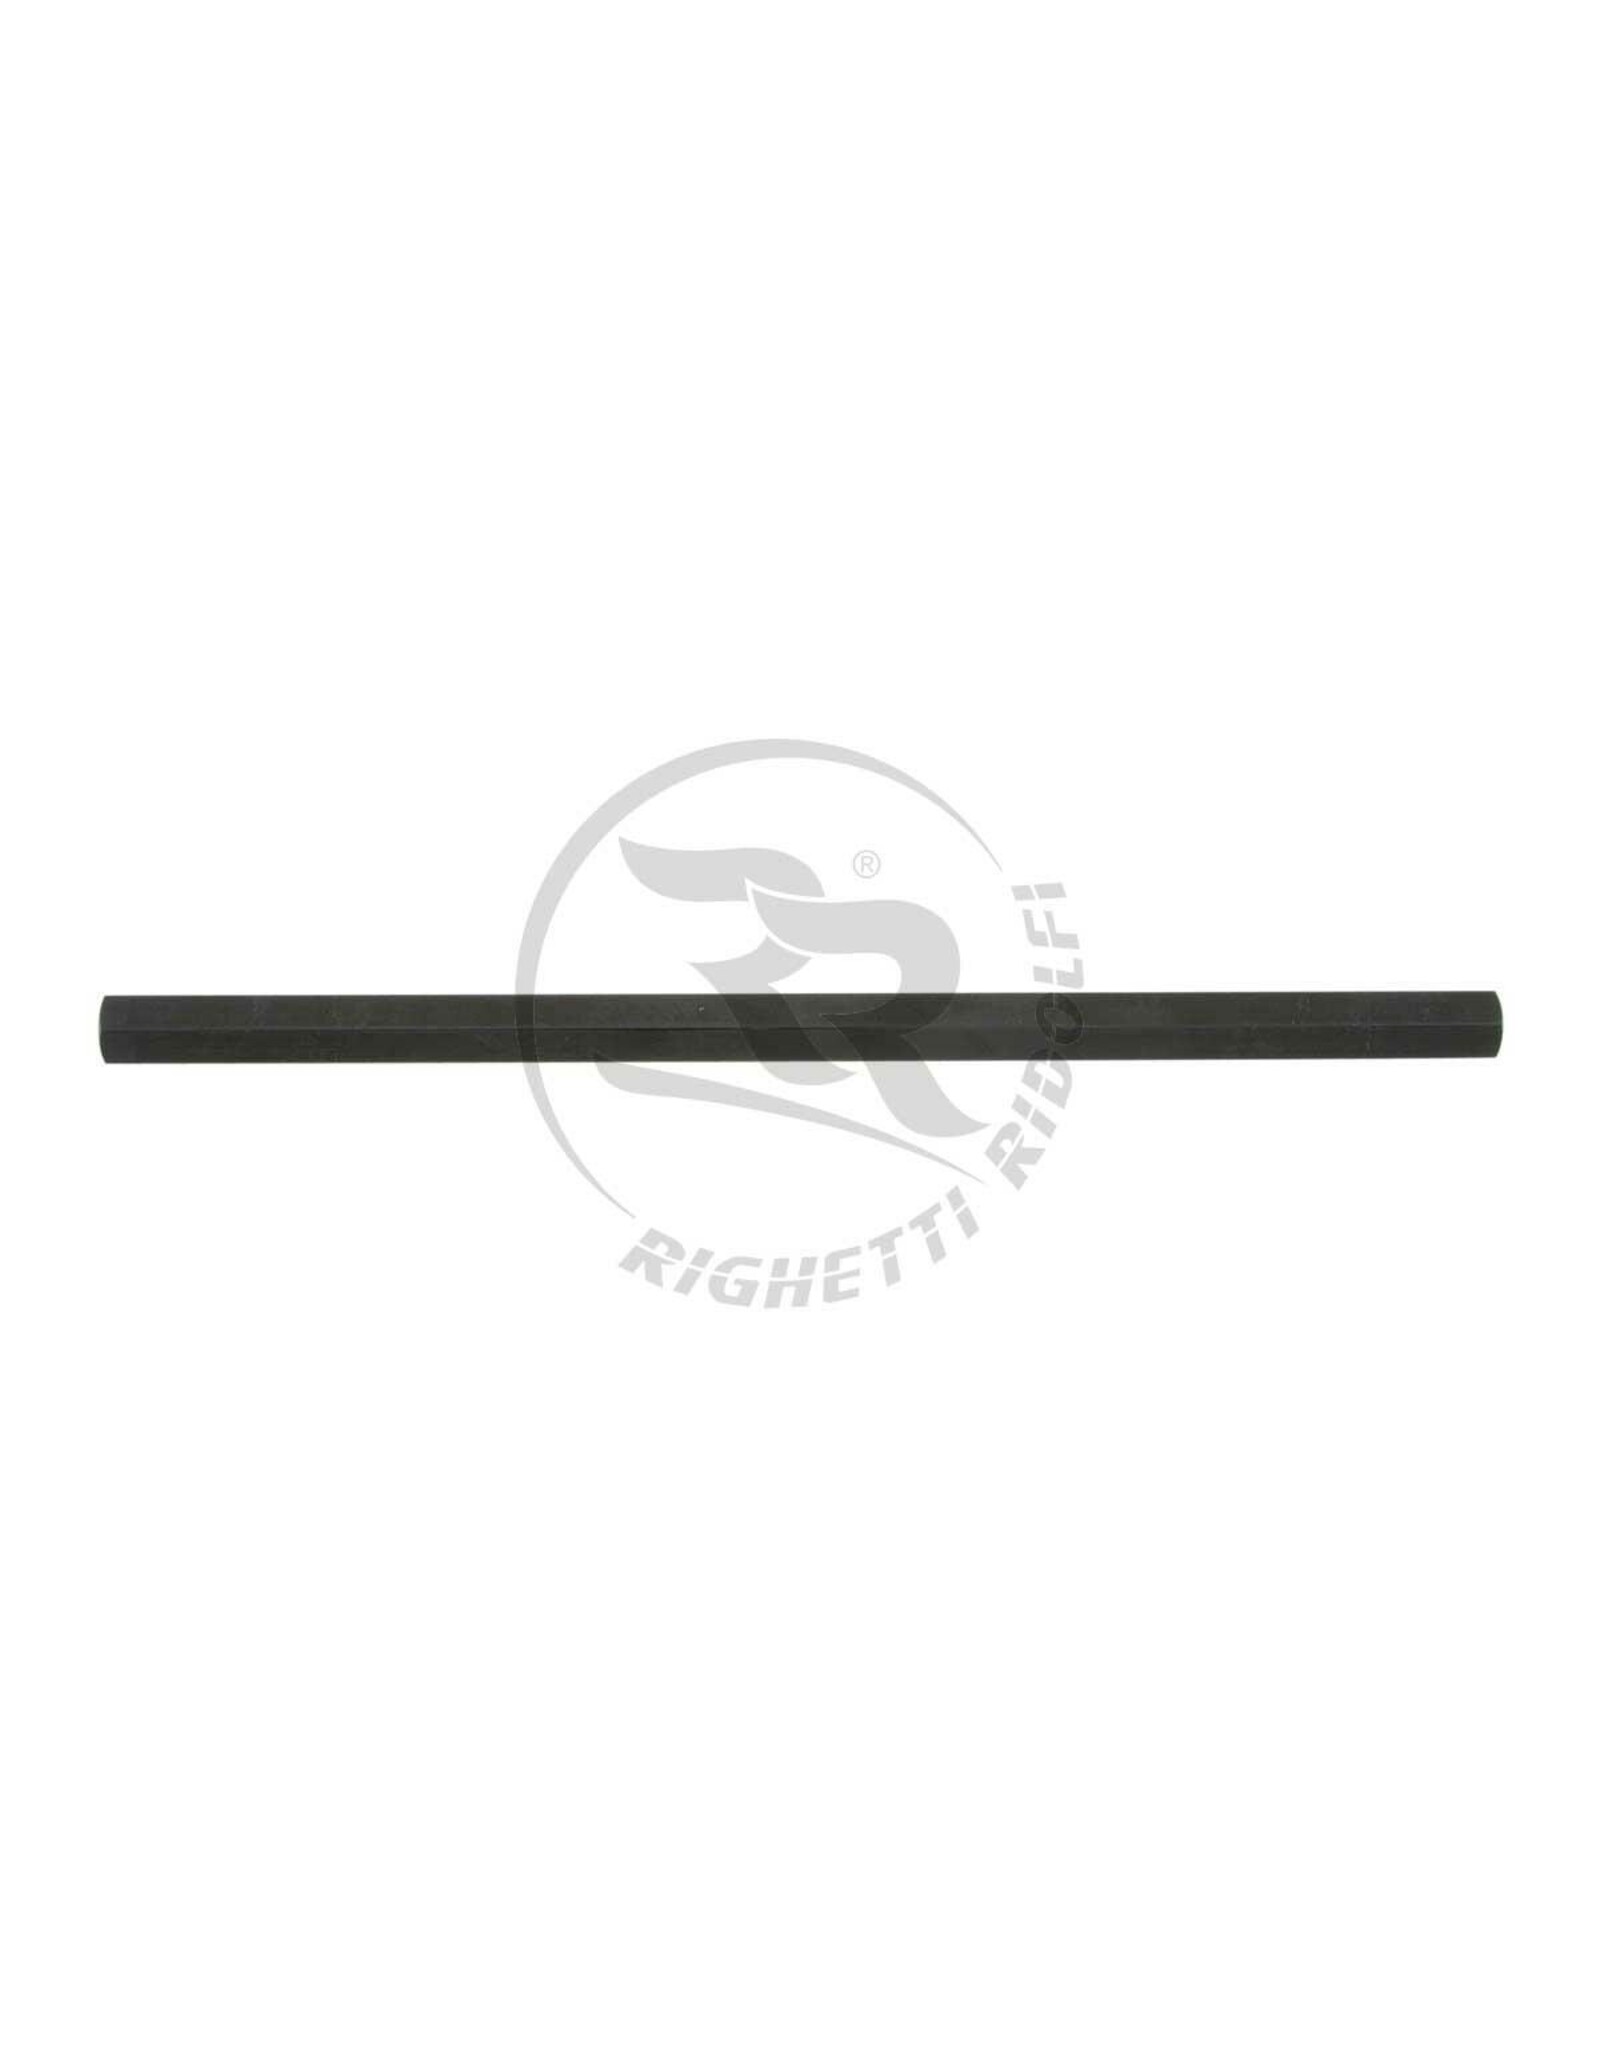 Righetti Ridolfi RR Spoorstang  Zwart (kies lengte in het keuze menu)